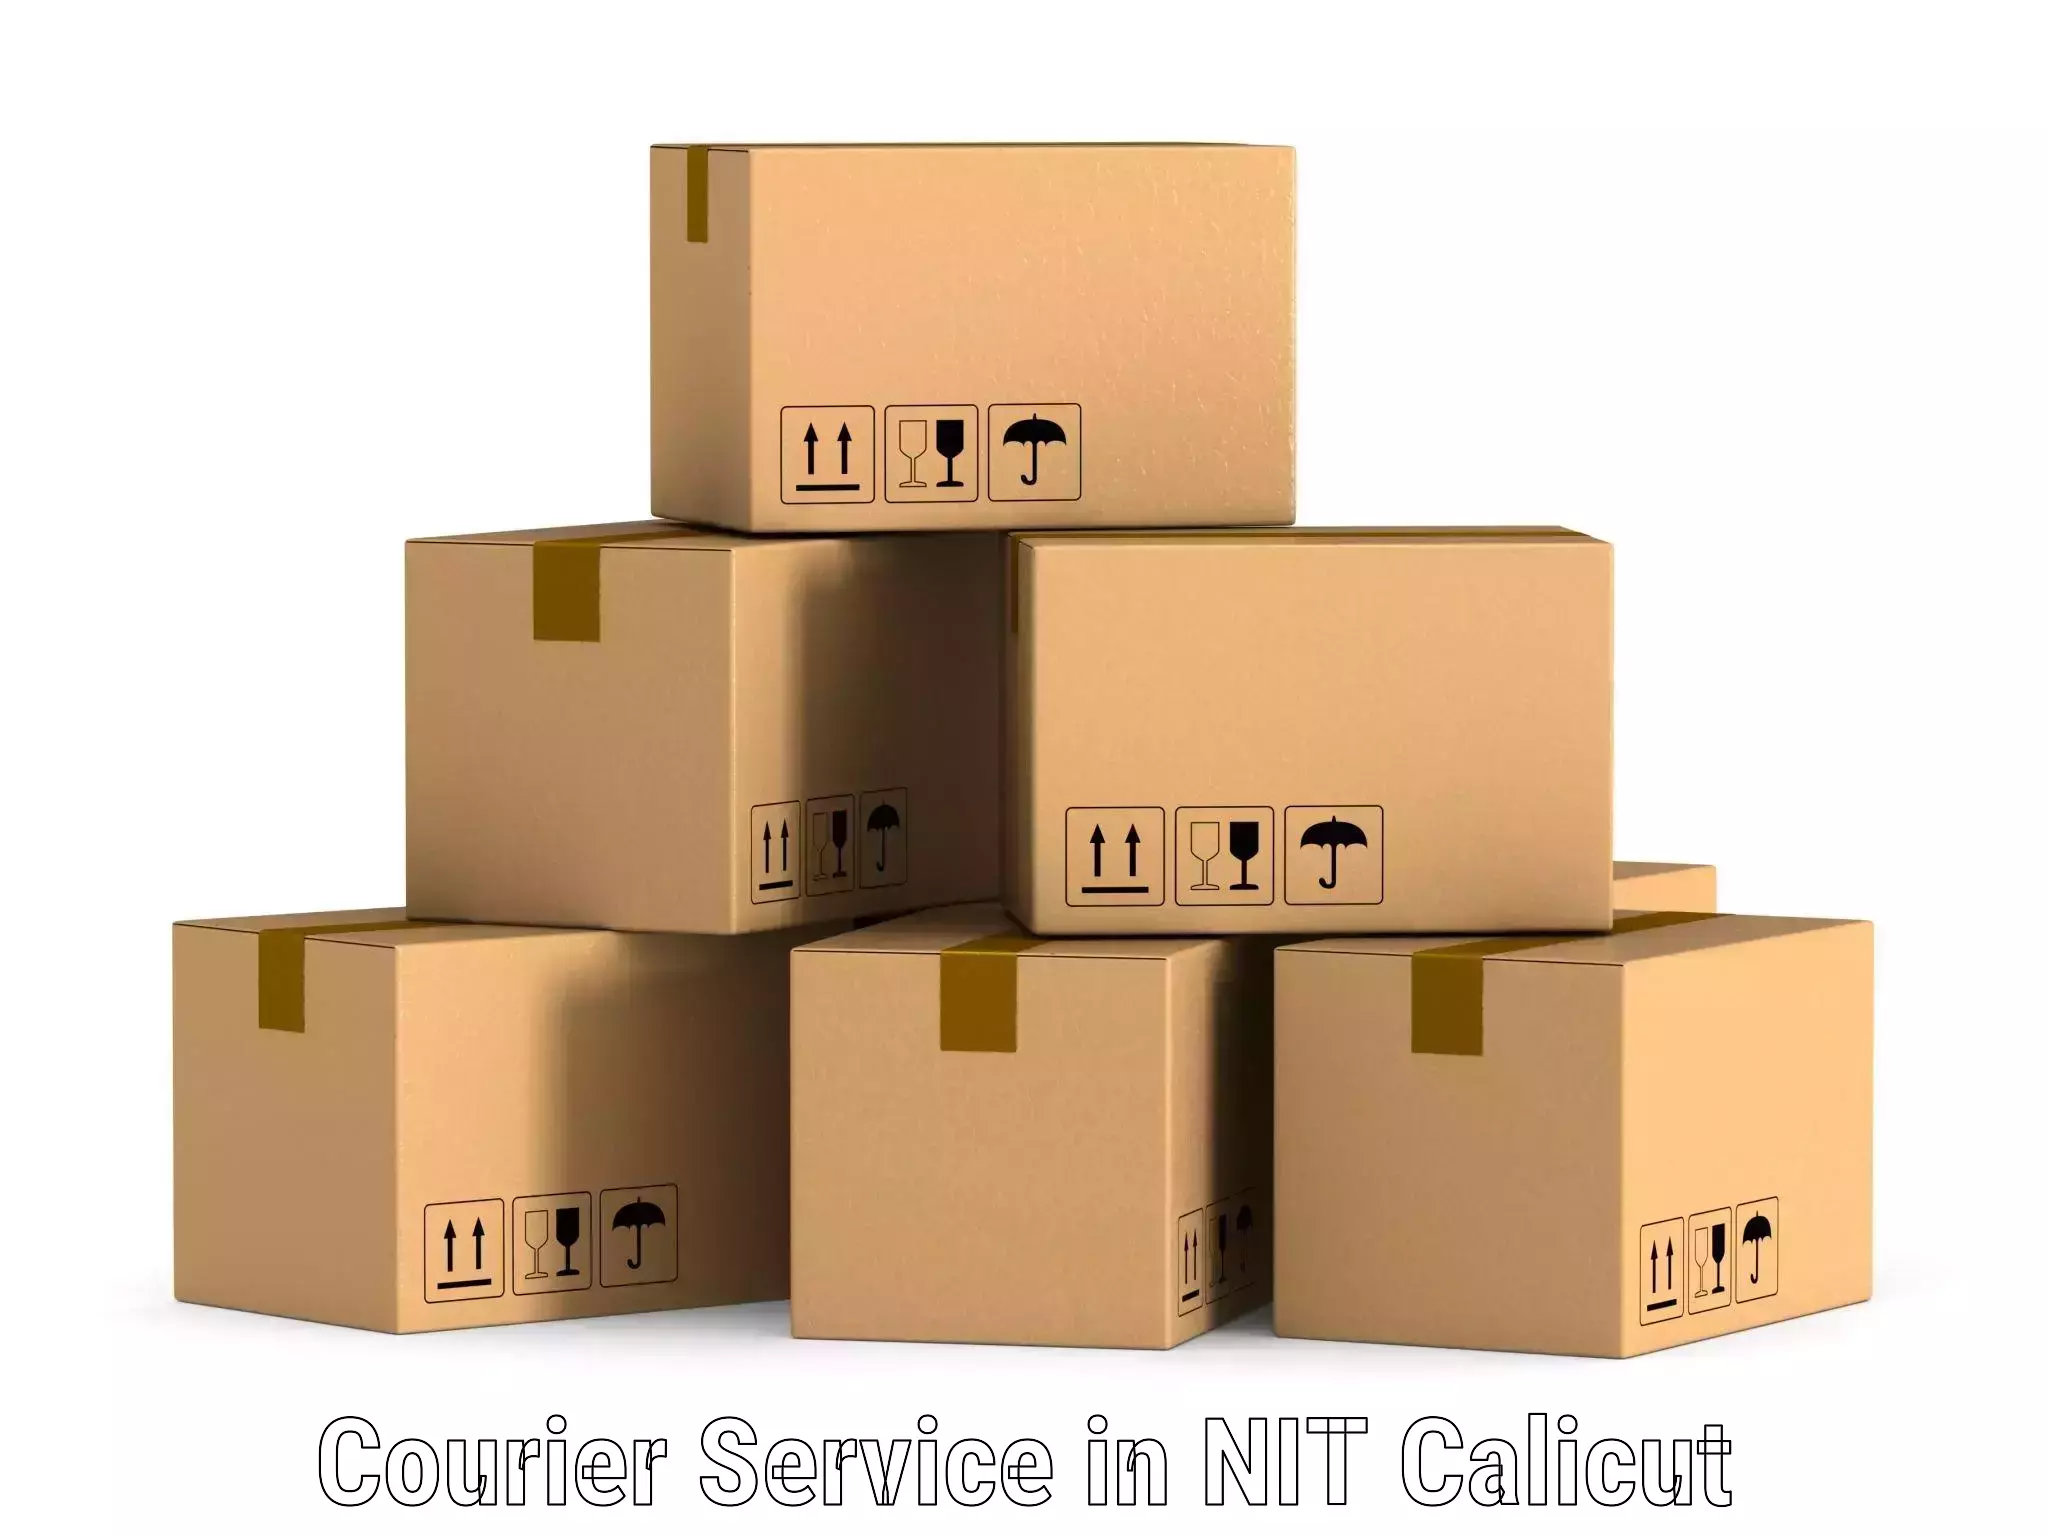 Return courier service in NIT Calicut